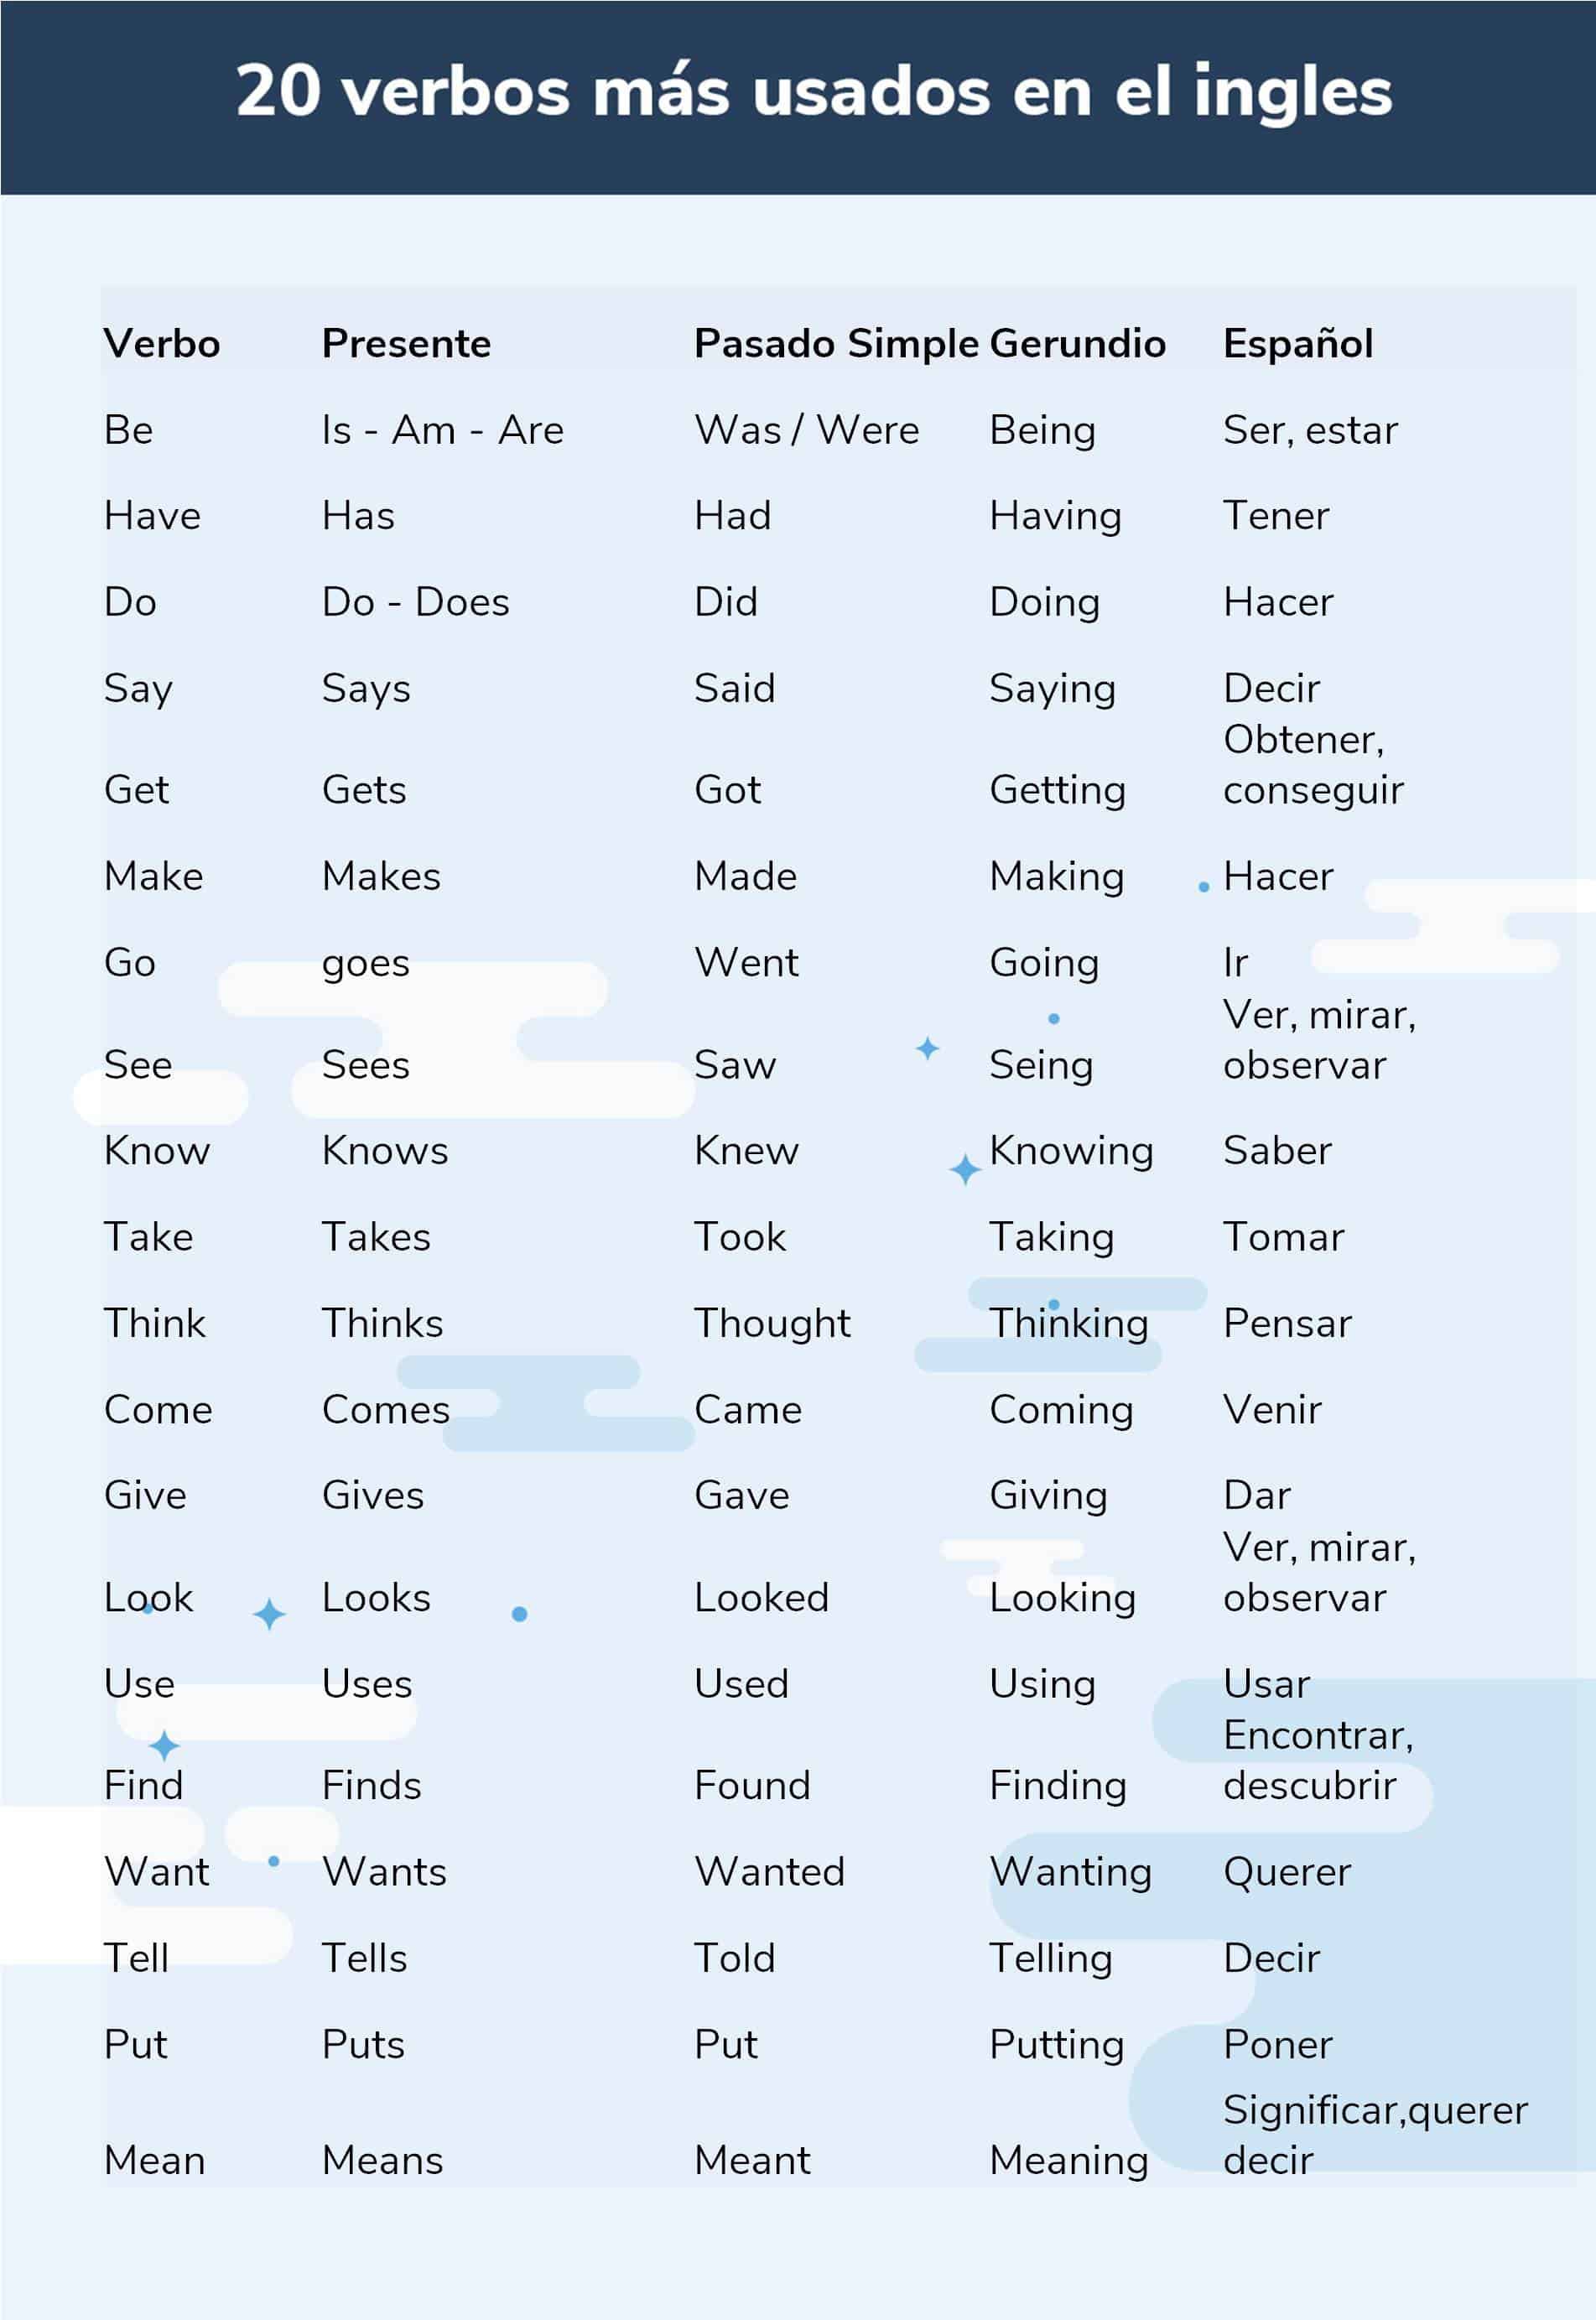 20 werkwoorden in het Engels meest gebruikte